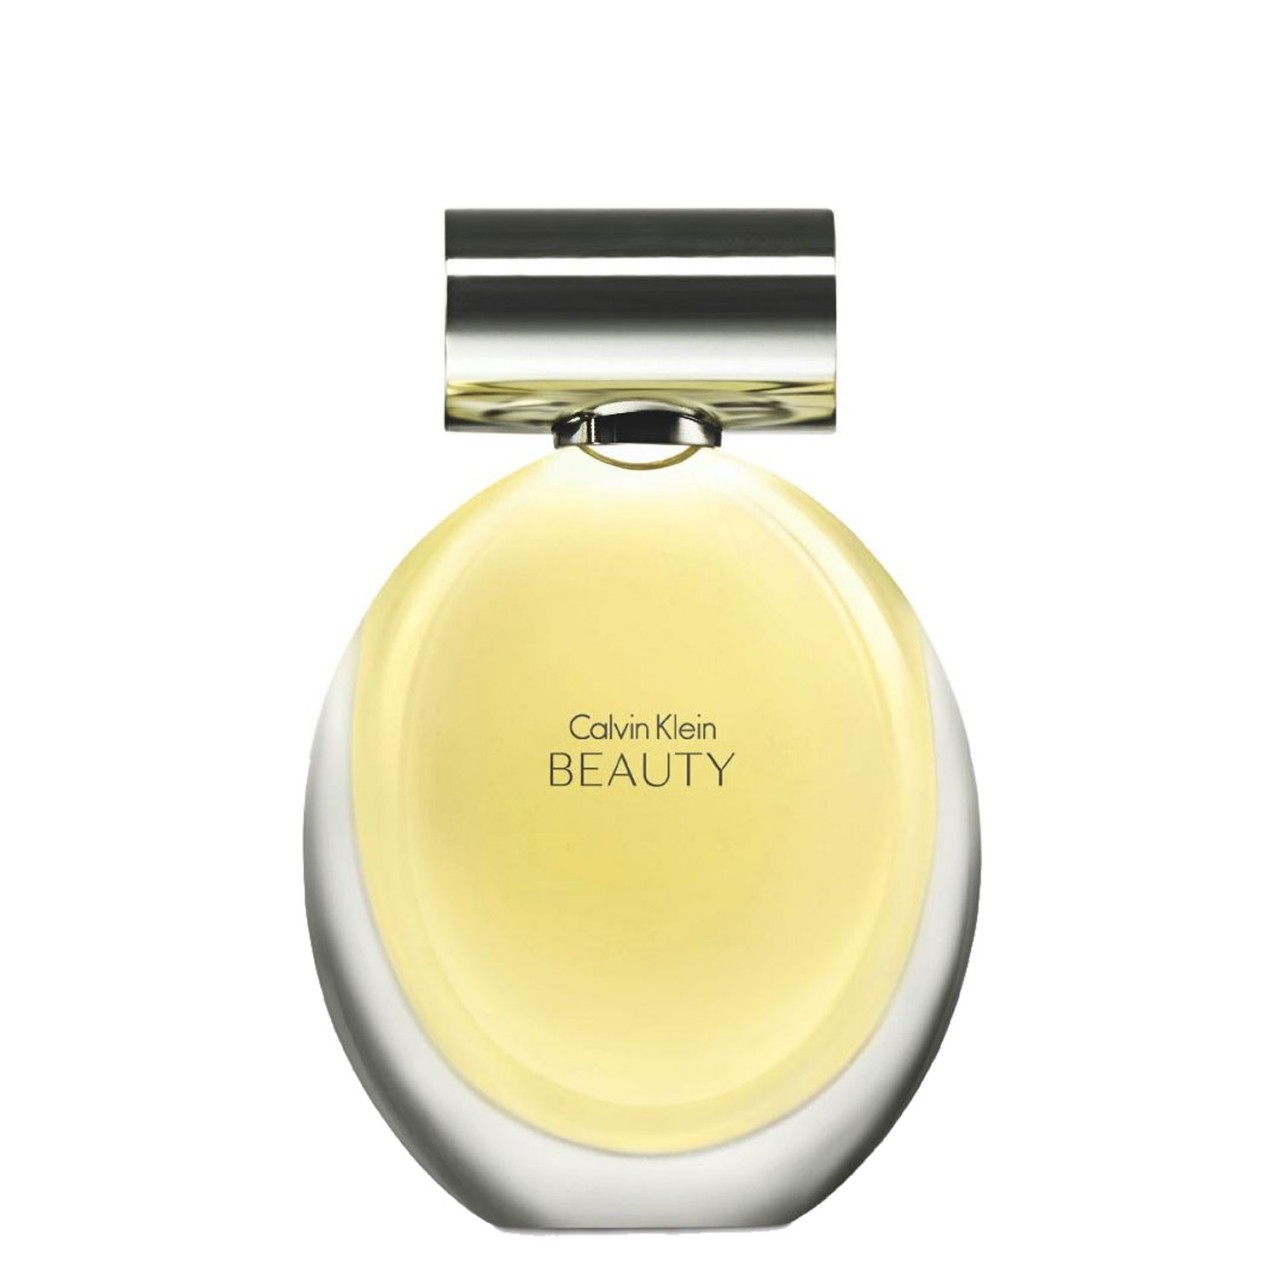 Beauty - Eau de Parfum von Calvin Klein